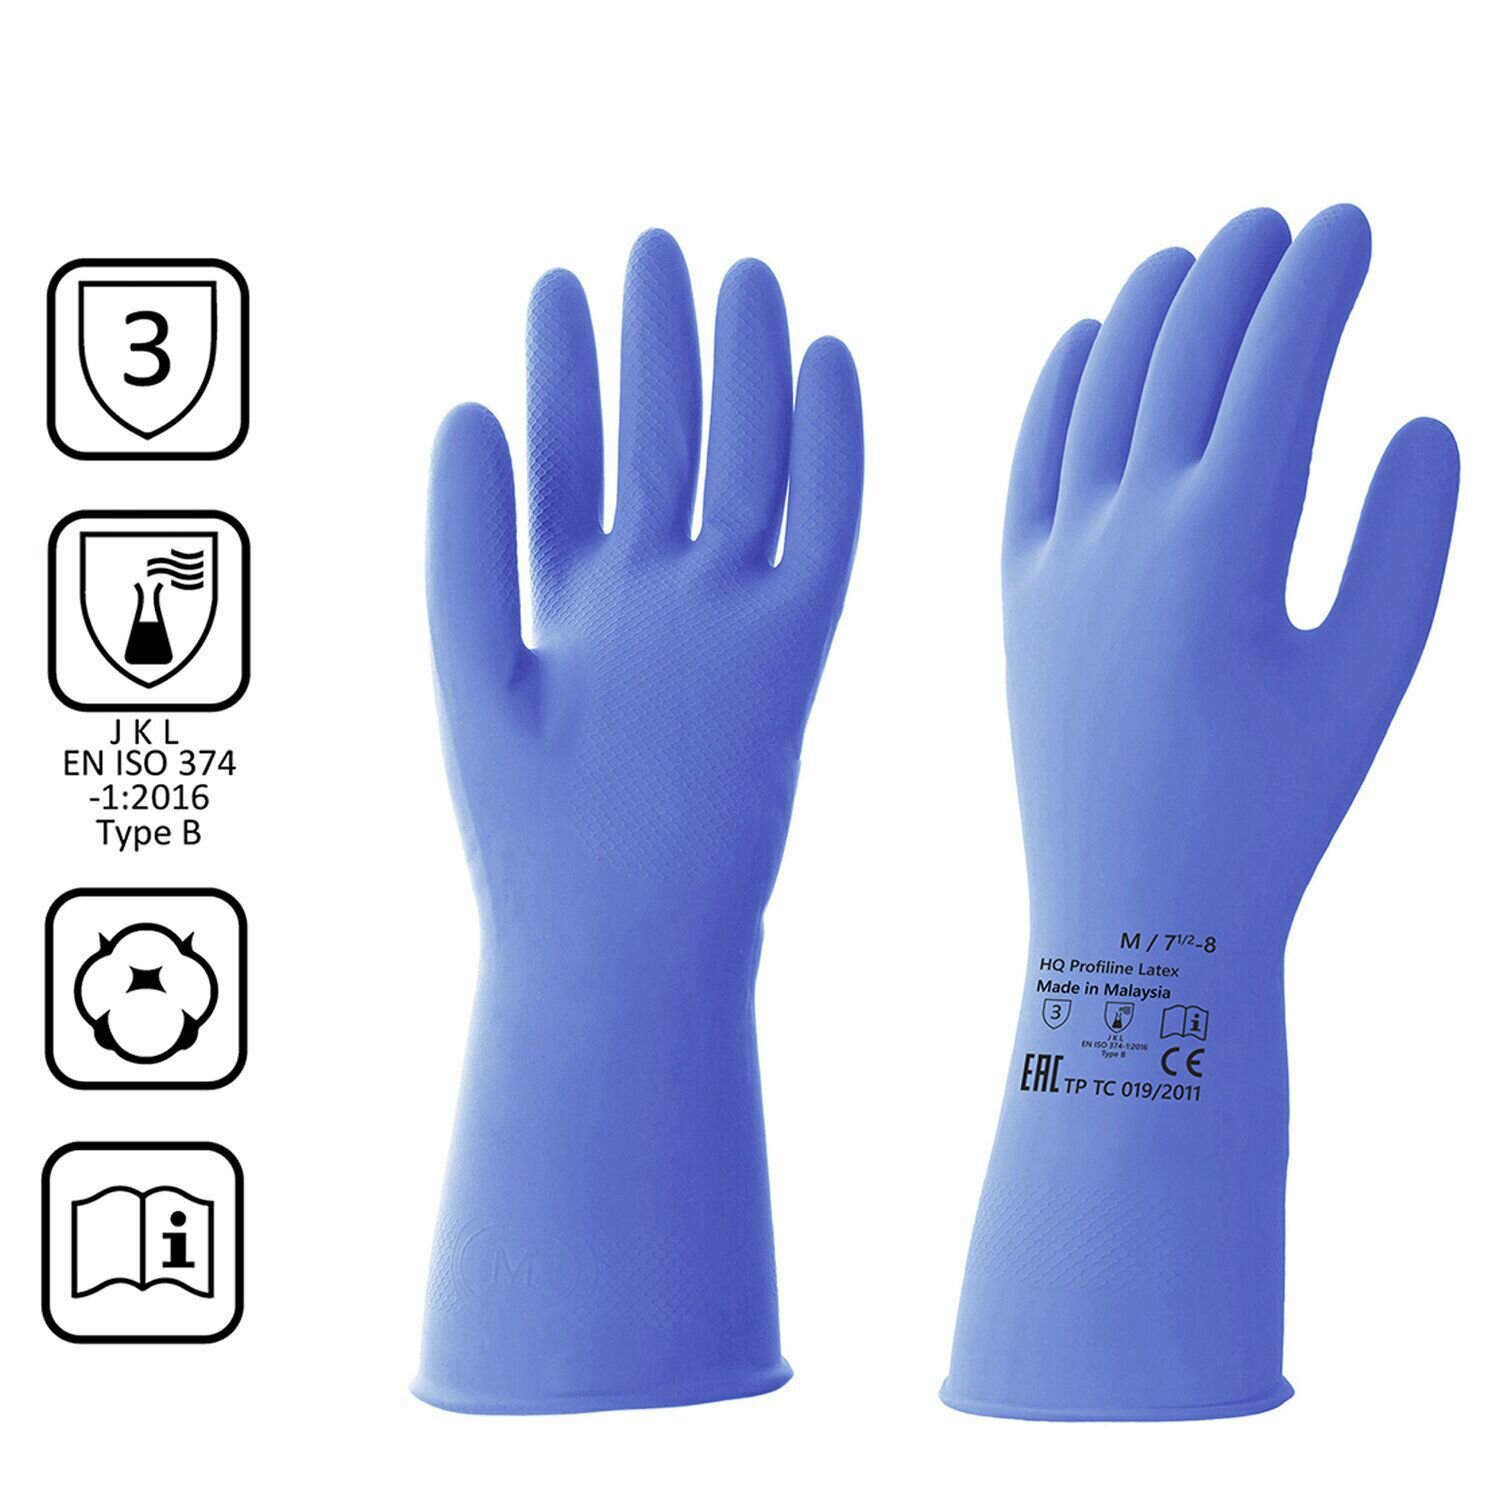 Перчатки латексные HQ Profiline КЩС, прочные, хлопковое напыление, размер 7,5-8, M, средний, синие